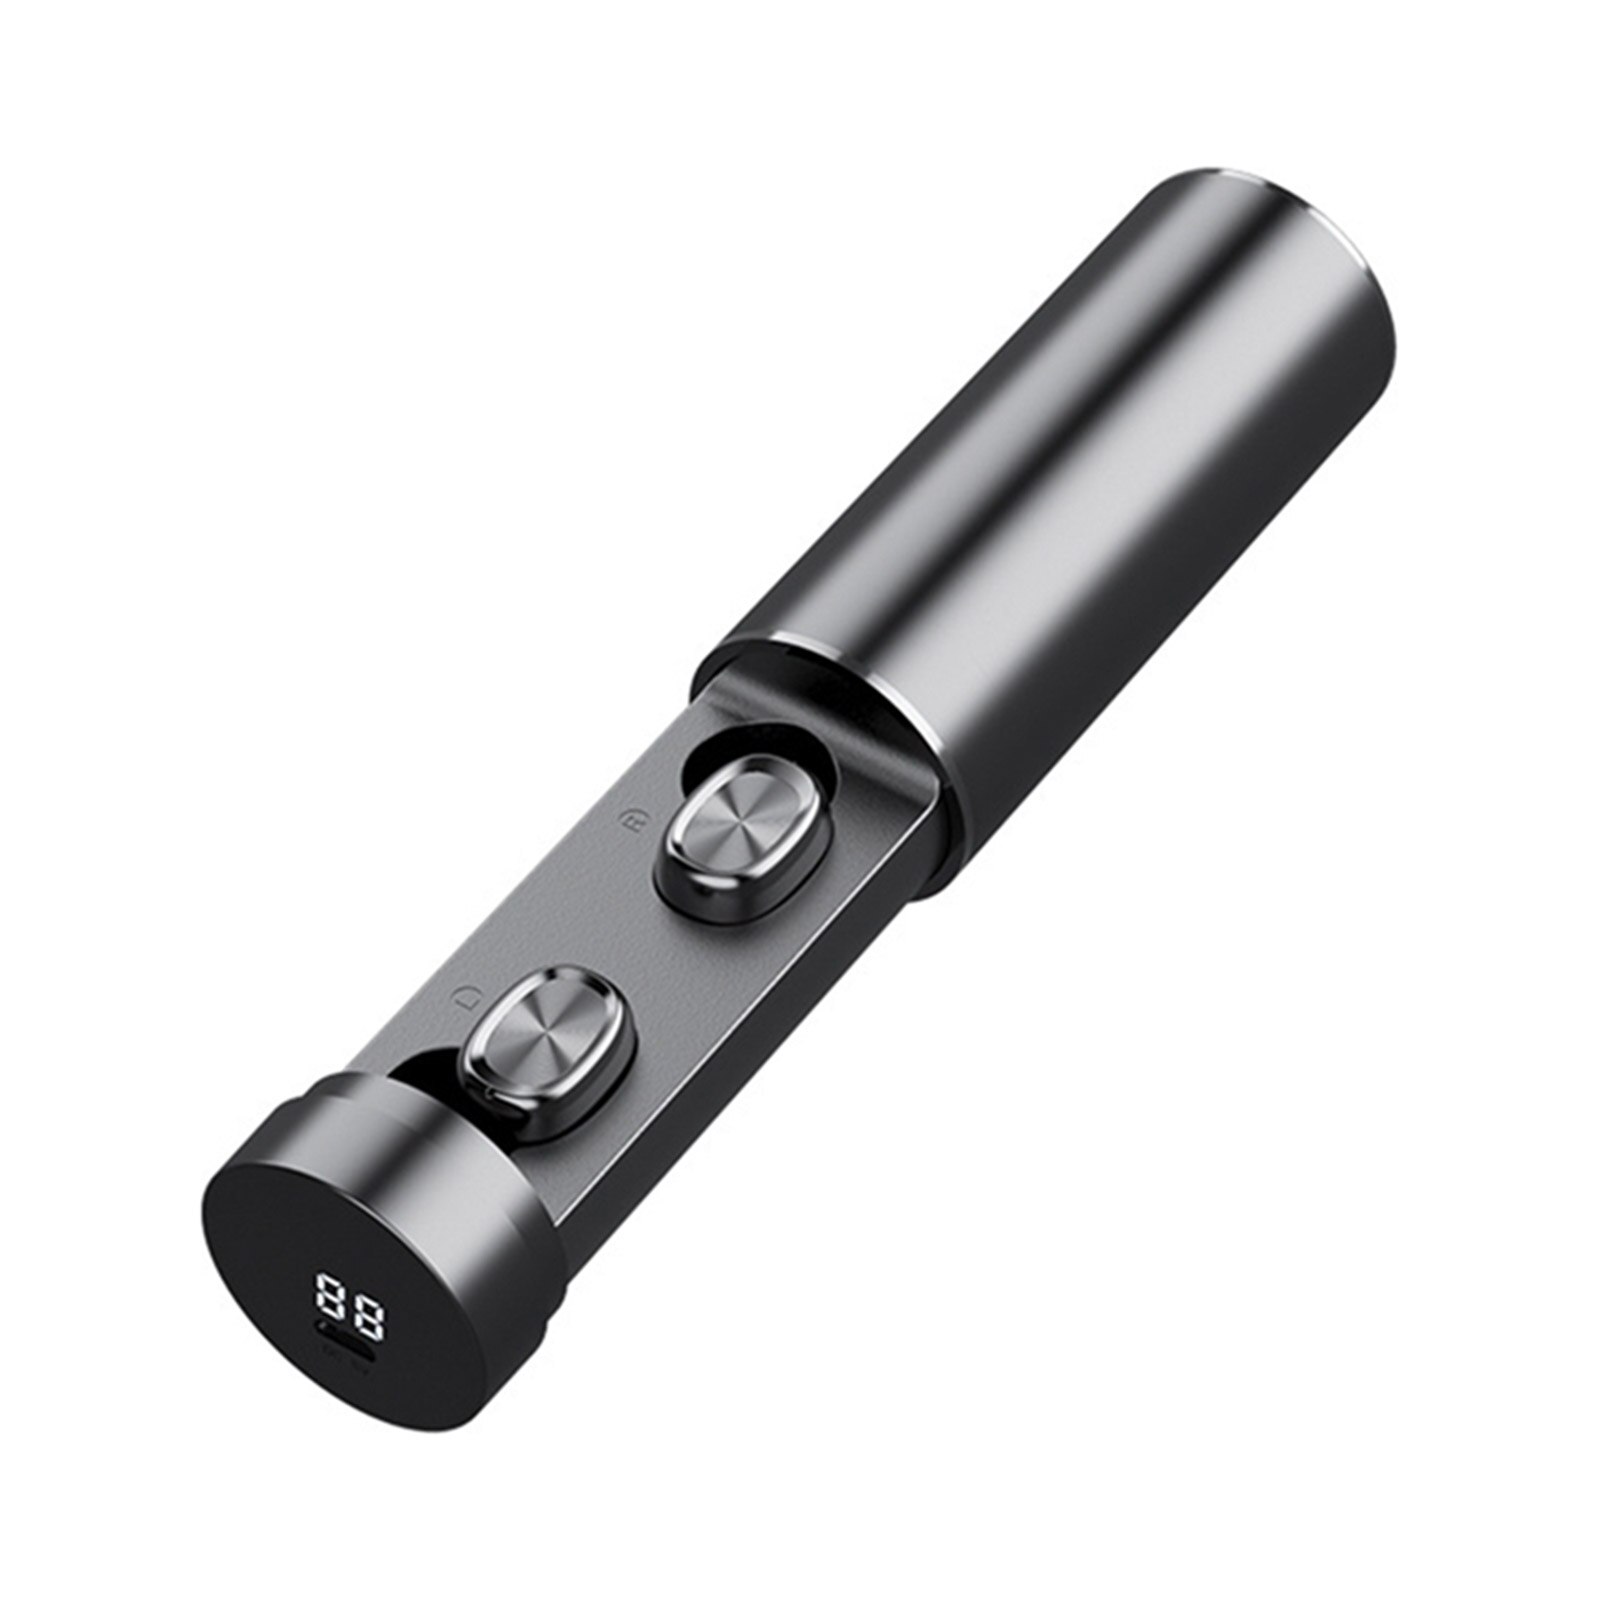 Tai nghe không dây Vitog TWS bluetooth 5.0 bass trầm hiển thị LED kỹ thuật số điều khiển cảm ứng thông minh